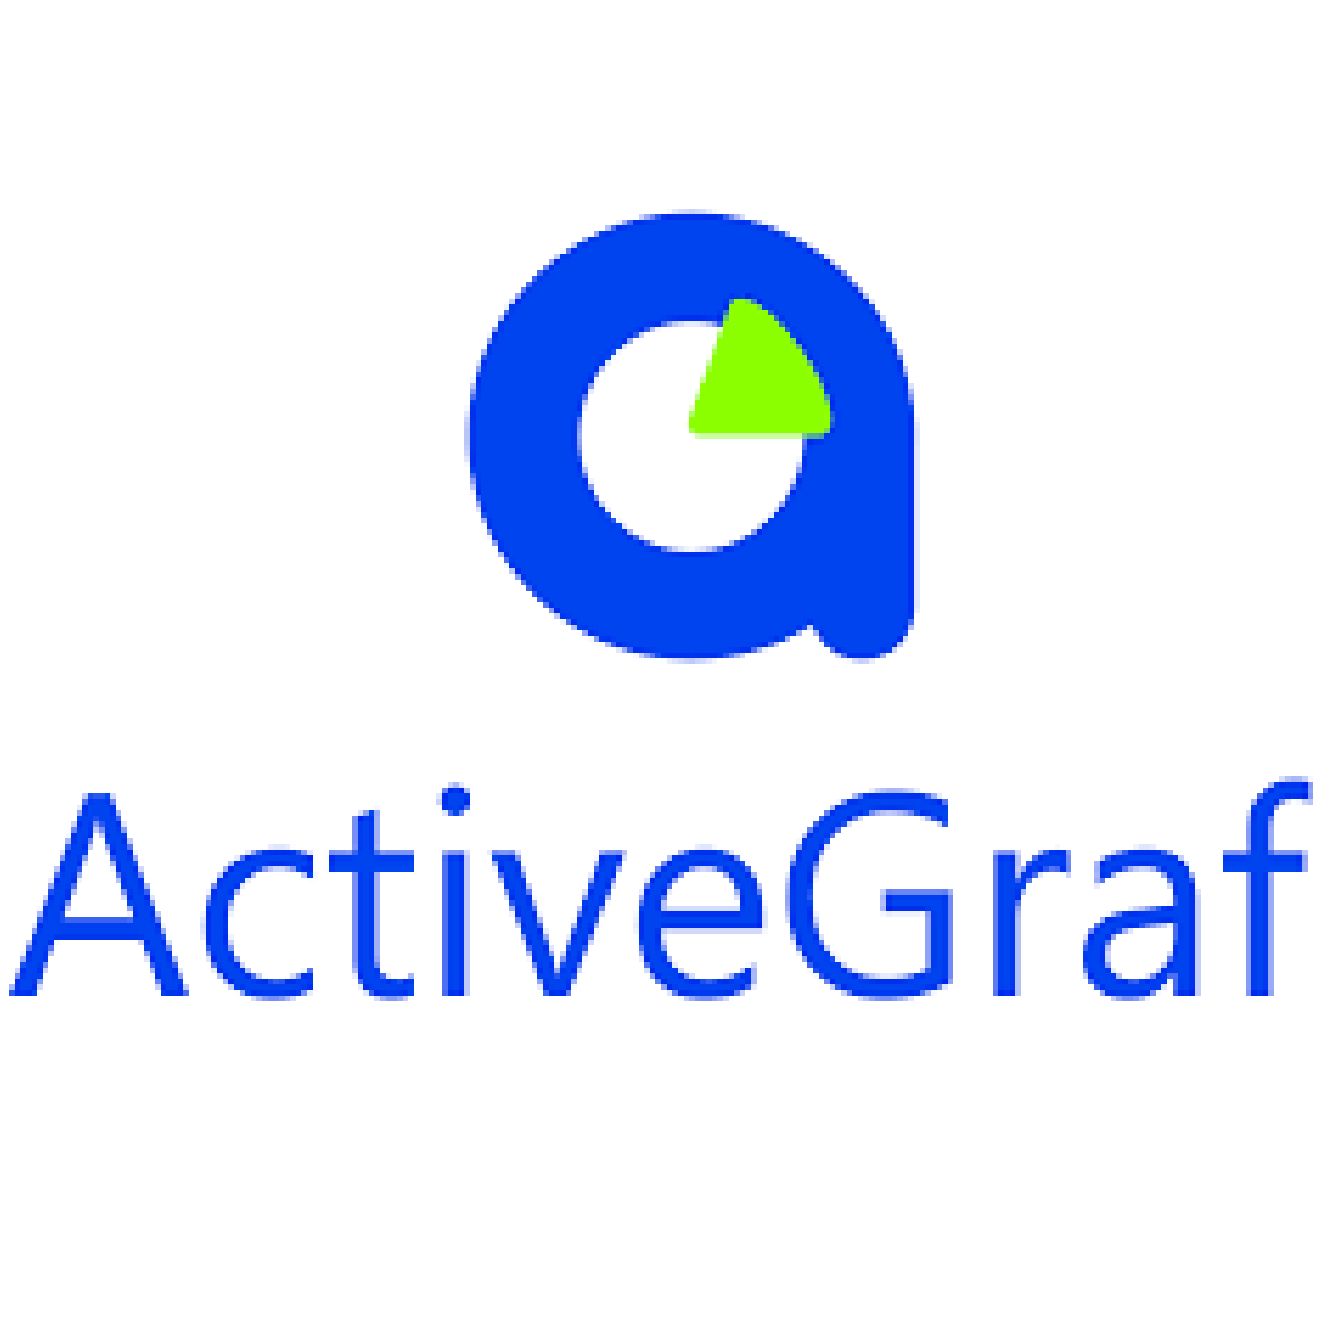 ActiveGraf